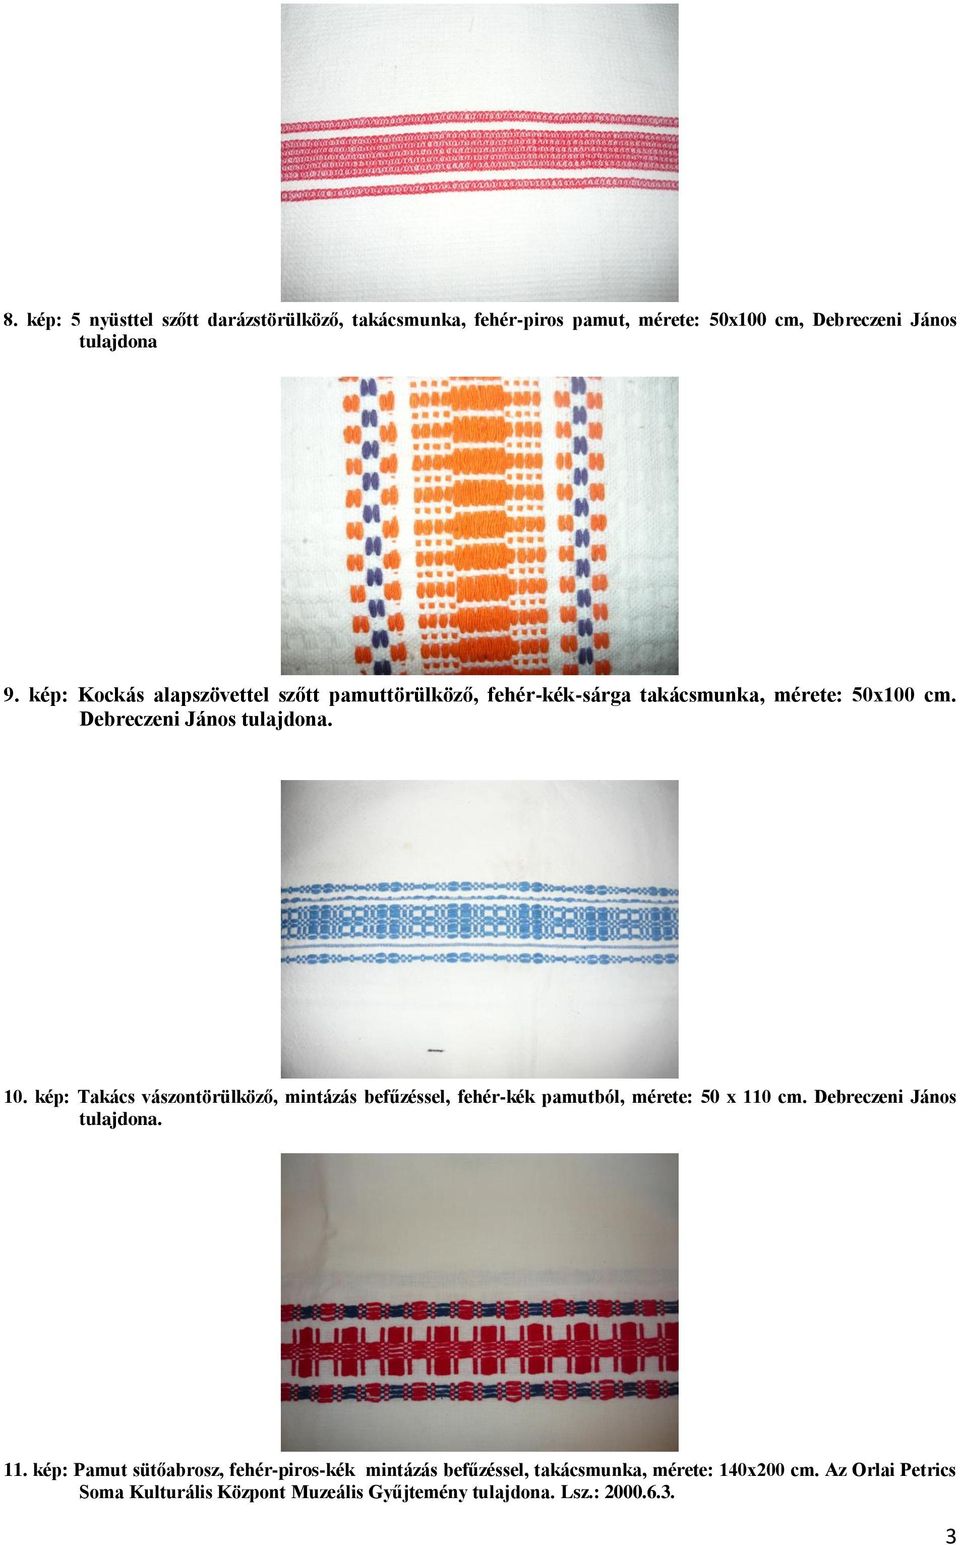 kép: Takács vászontörülköző, mintázás befűzéssel, fehér-kék pamutból, mérete: 50 x 110